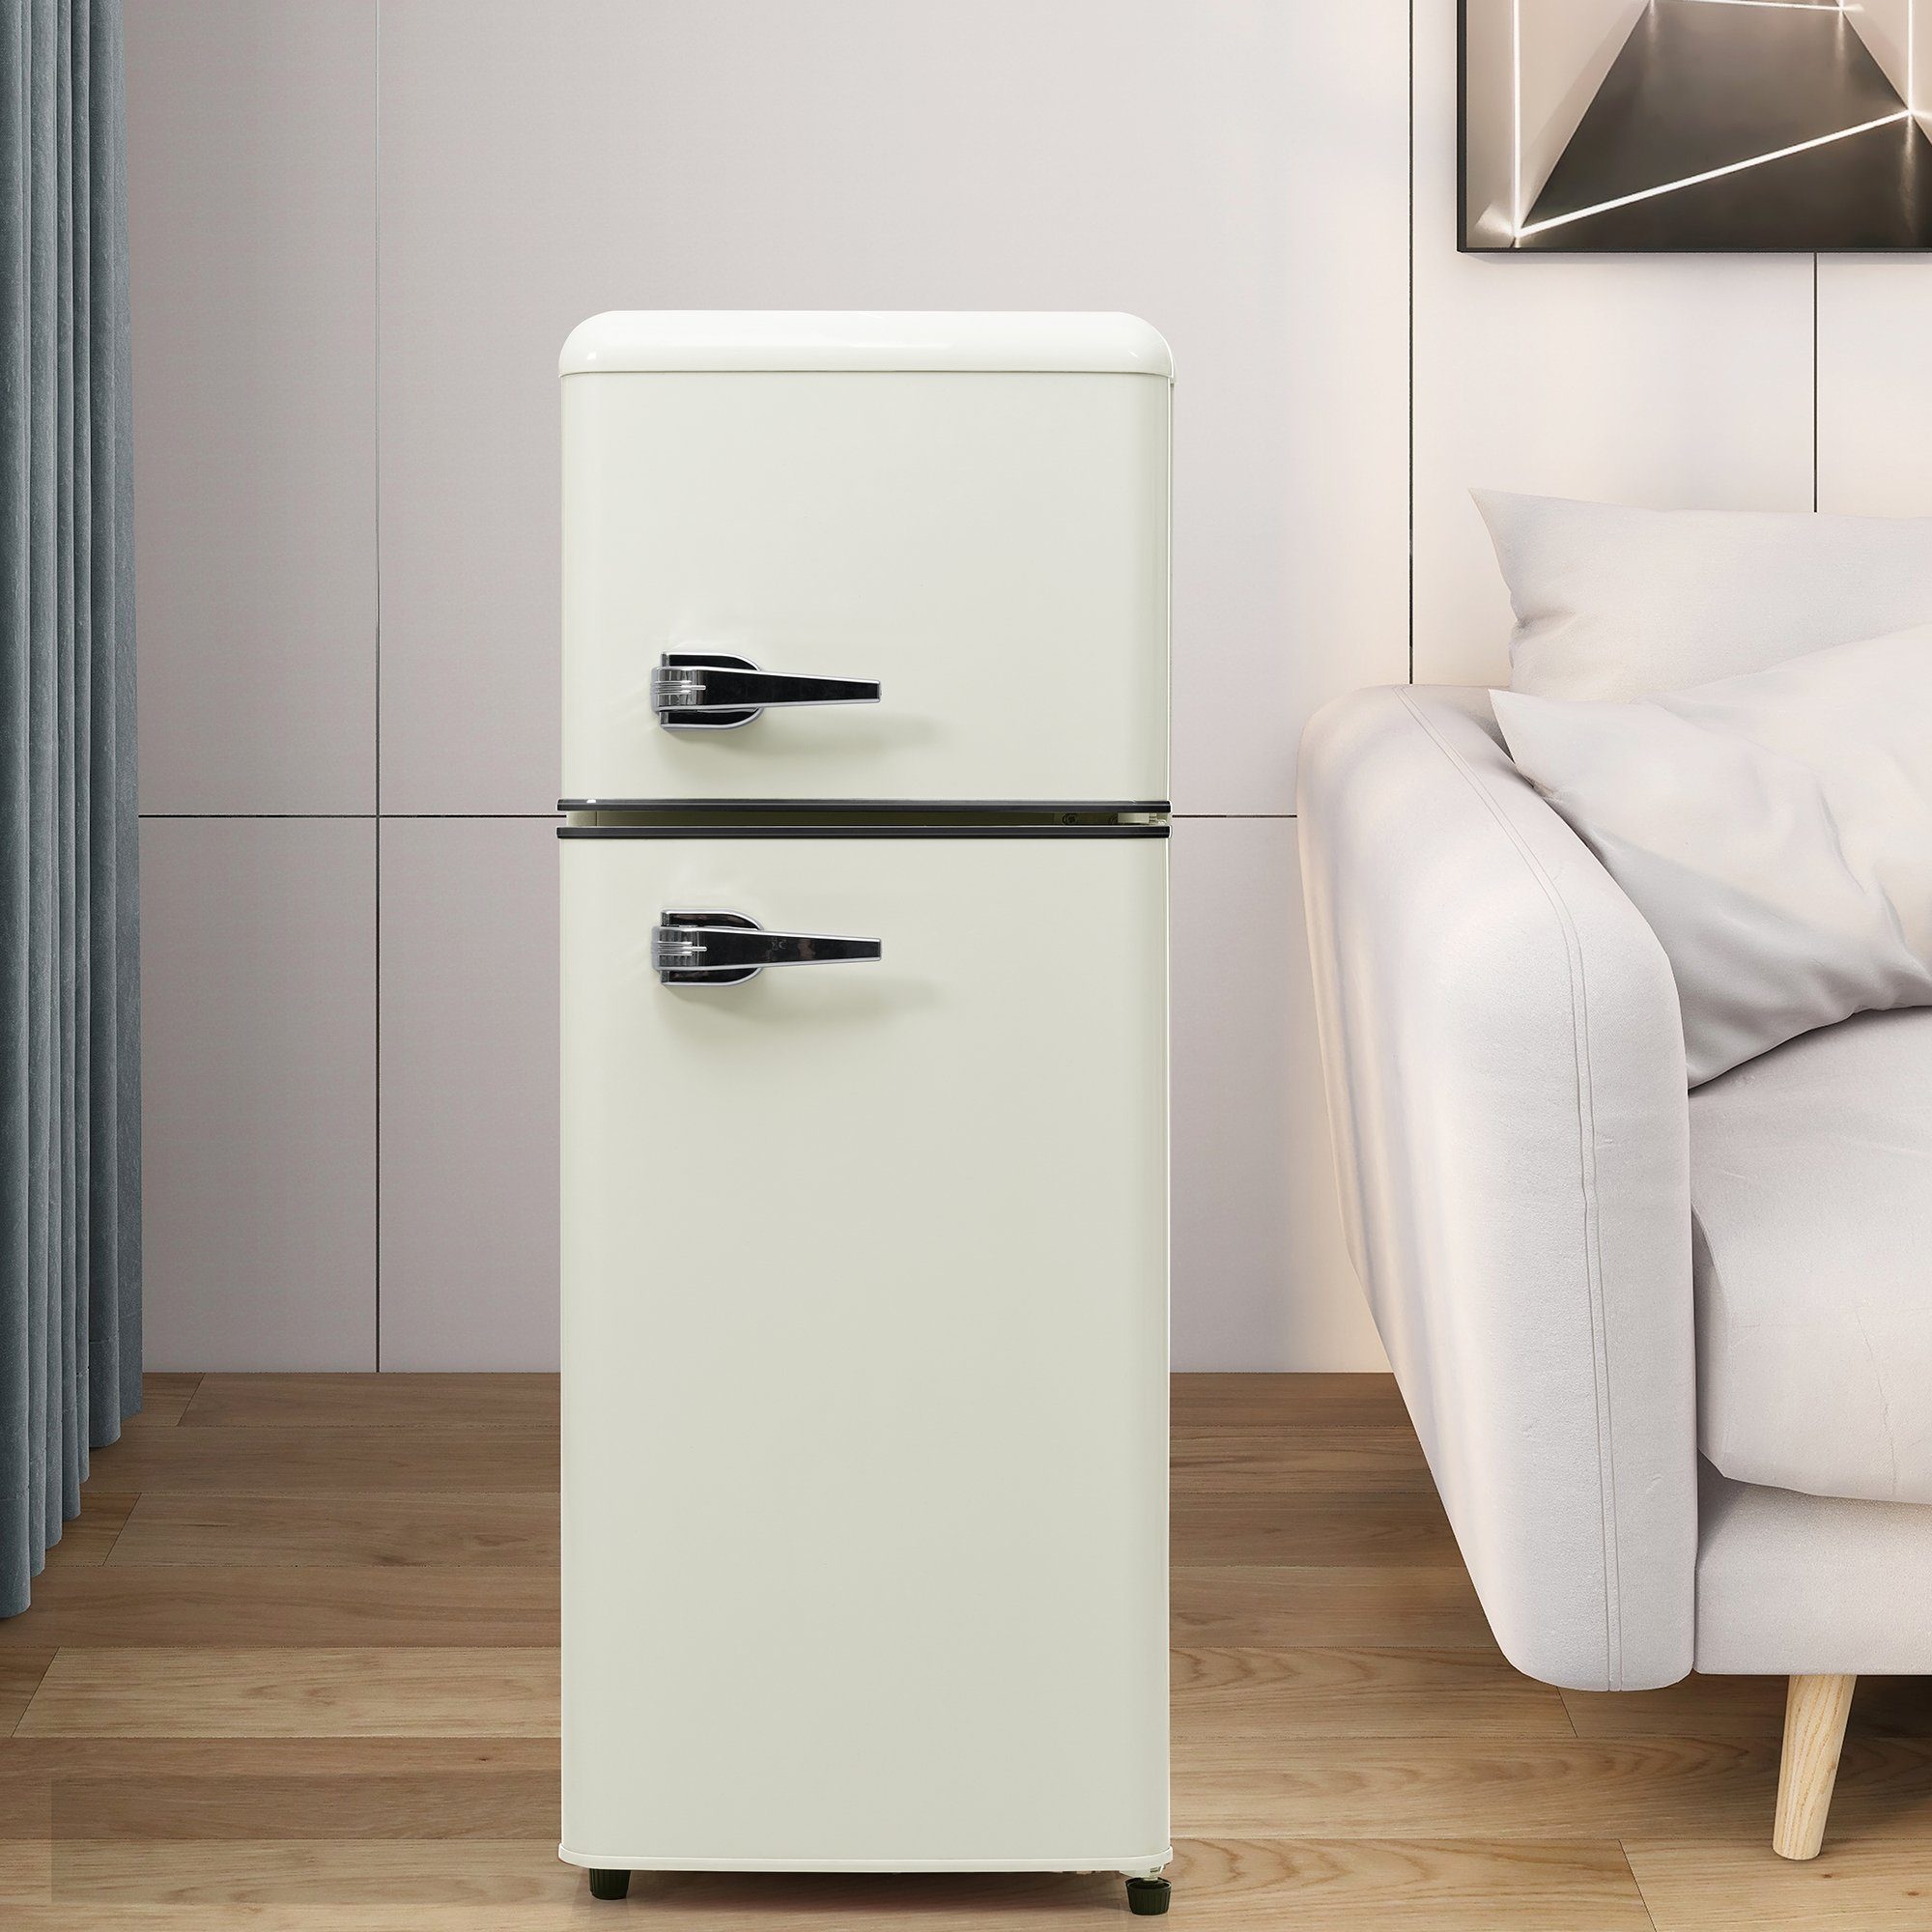 Ulife Kühlschrank BCD-102, 101 cm hoch, 41 cm breit, verstellebare Ablage und Füße